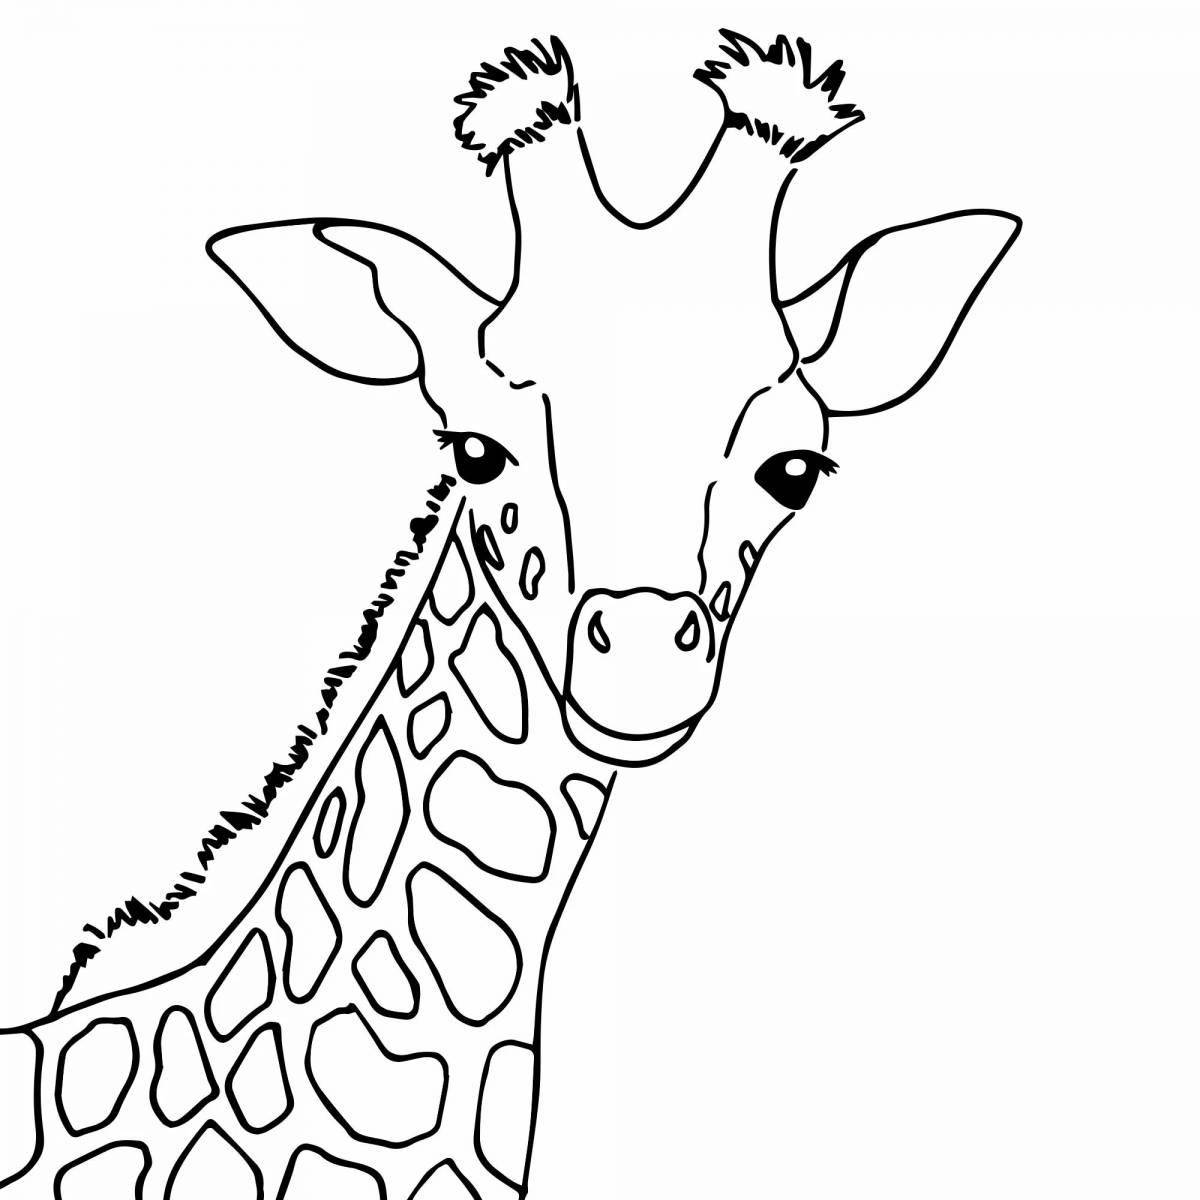 Lovely drawing of a giraffe for kids